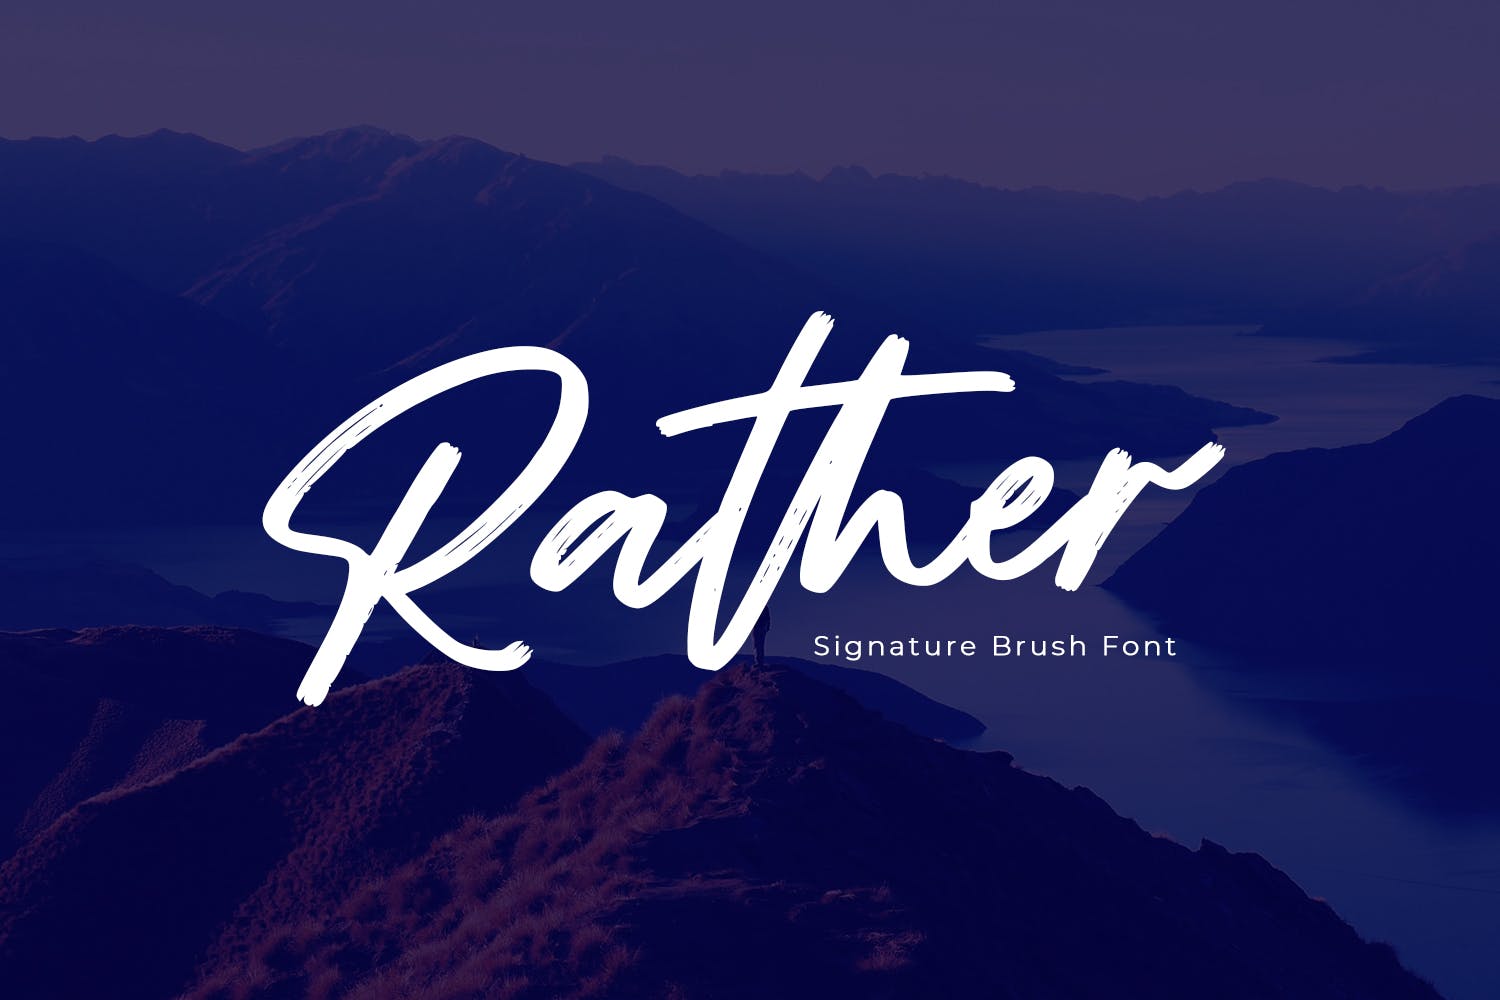 马克笔手写英文字体素材 Rather – Brush Font设计素材模板